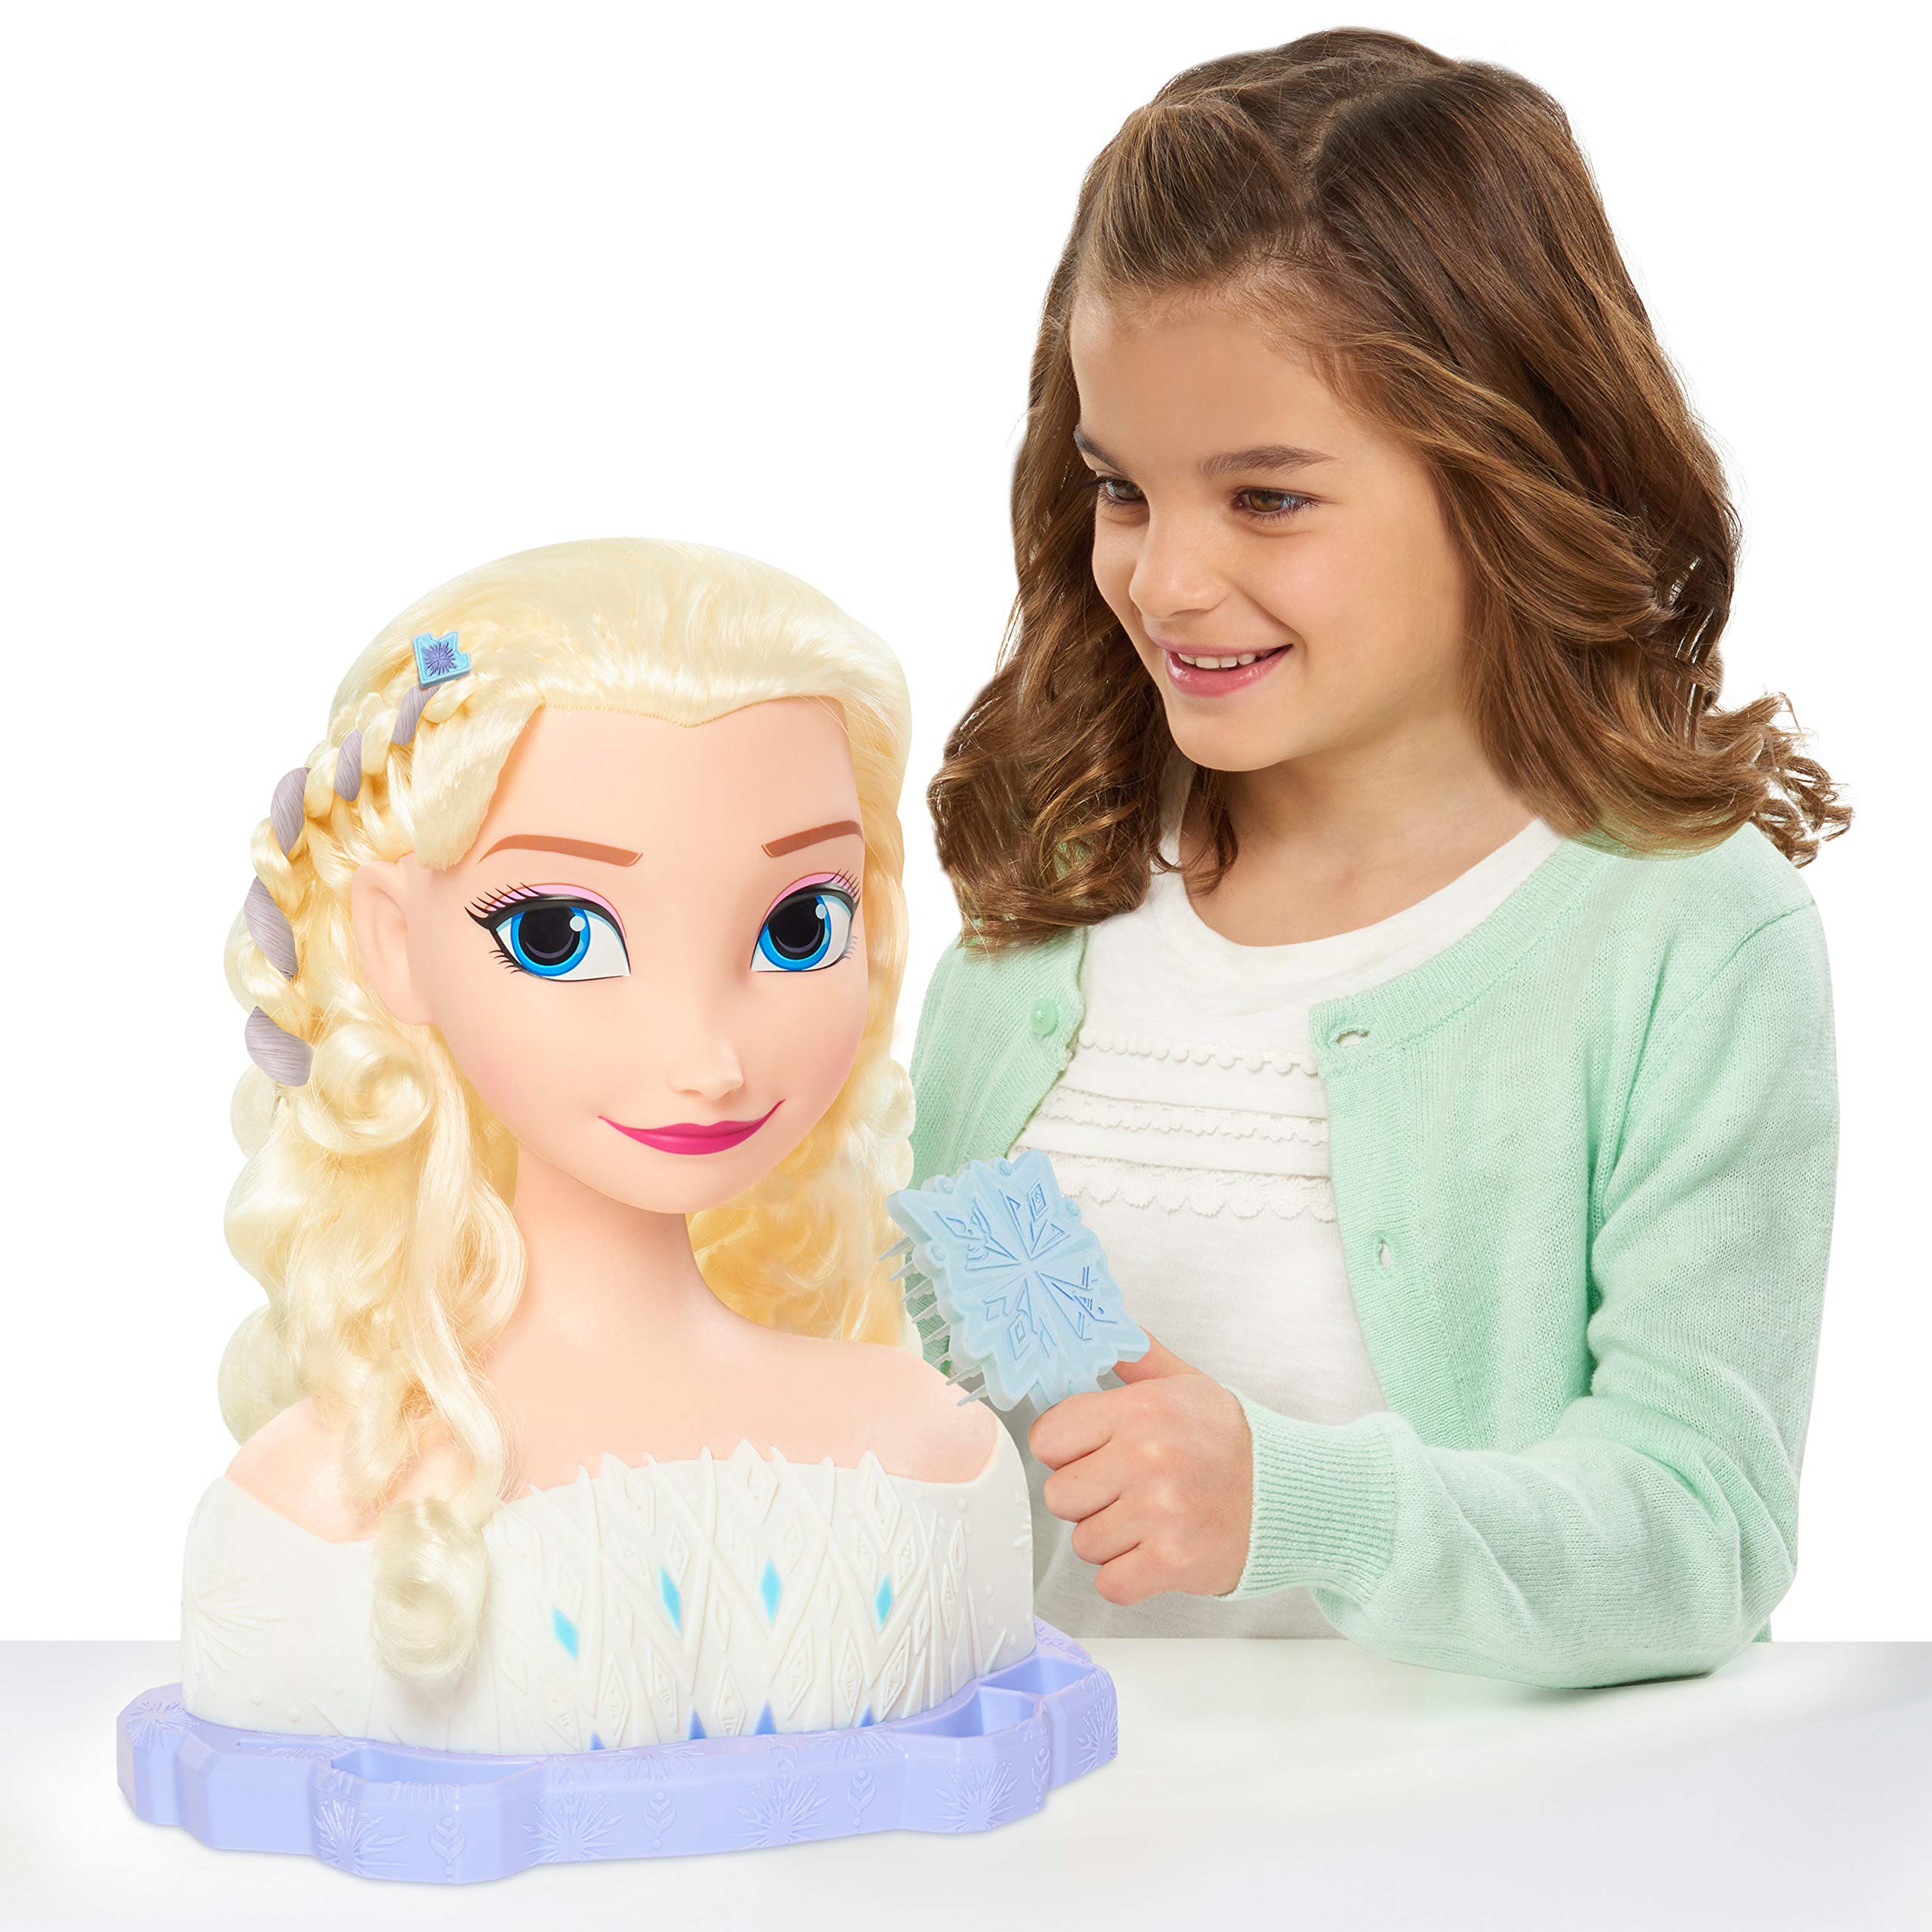 Disney Frozen Just Play 2 Deluxe Elsa The Snow Queen Styling Head, 17-Pieces